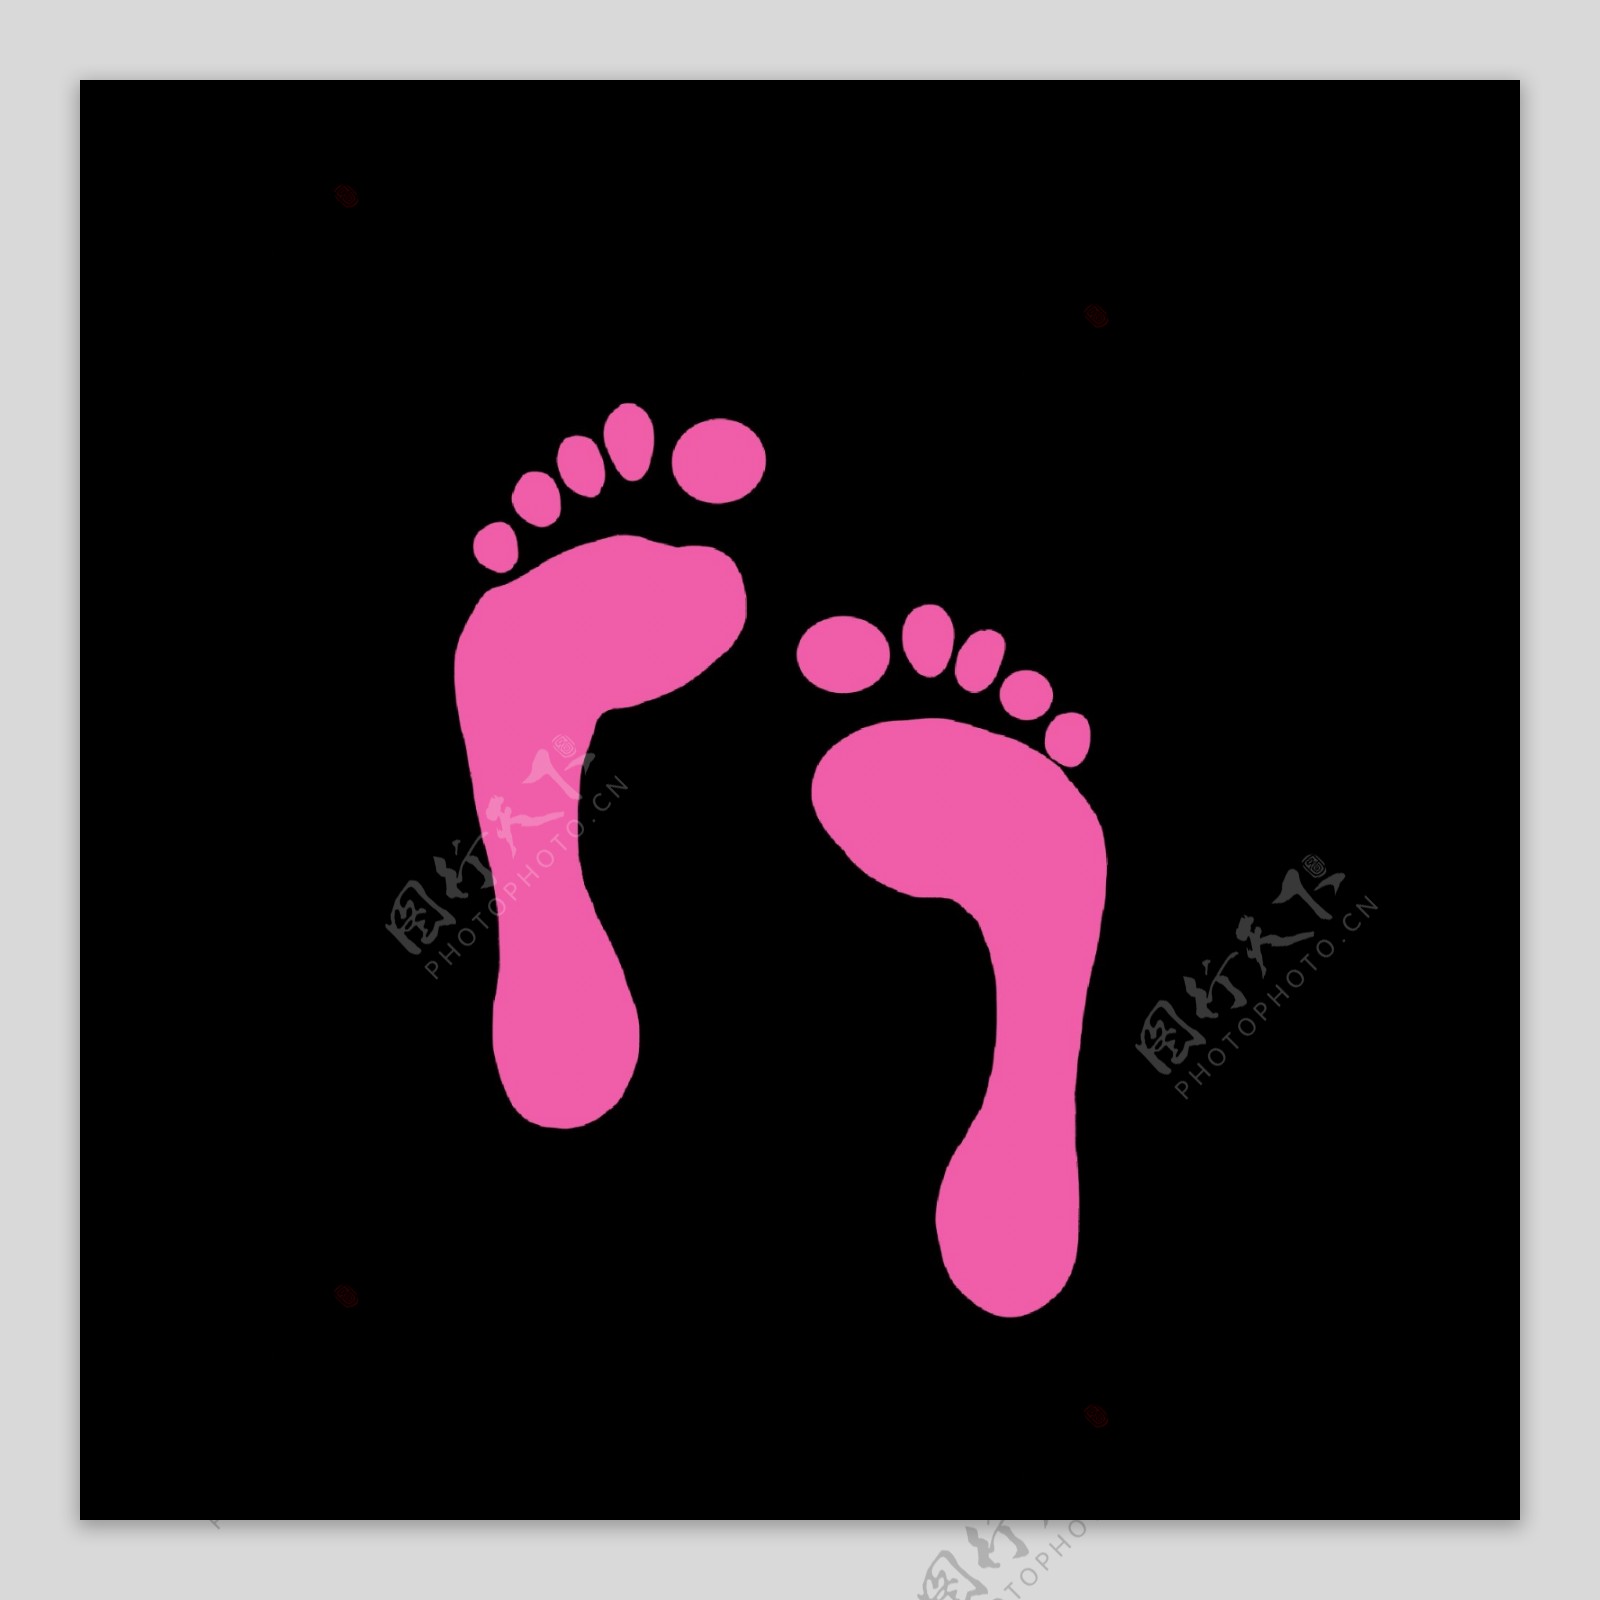 粉色人物形象脚印